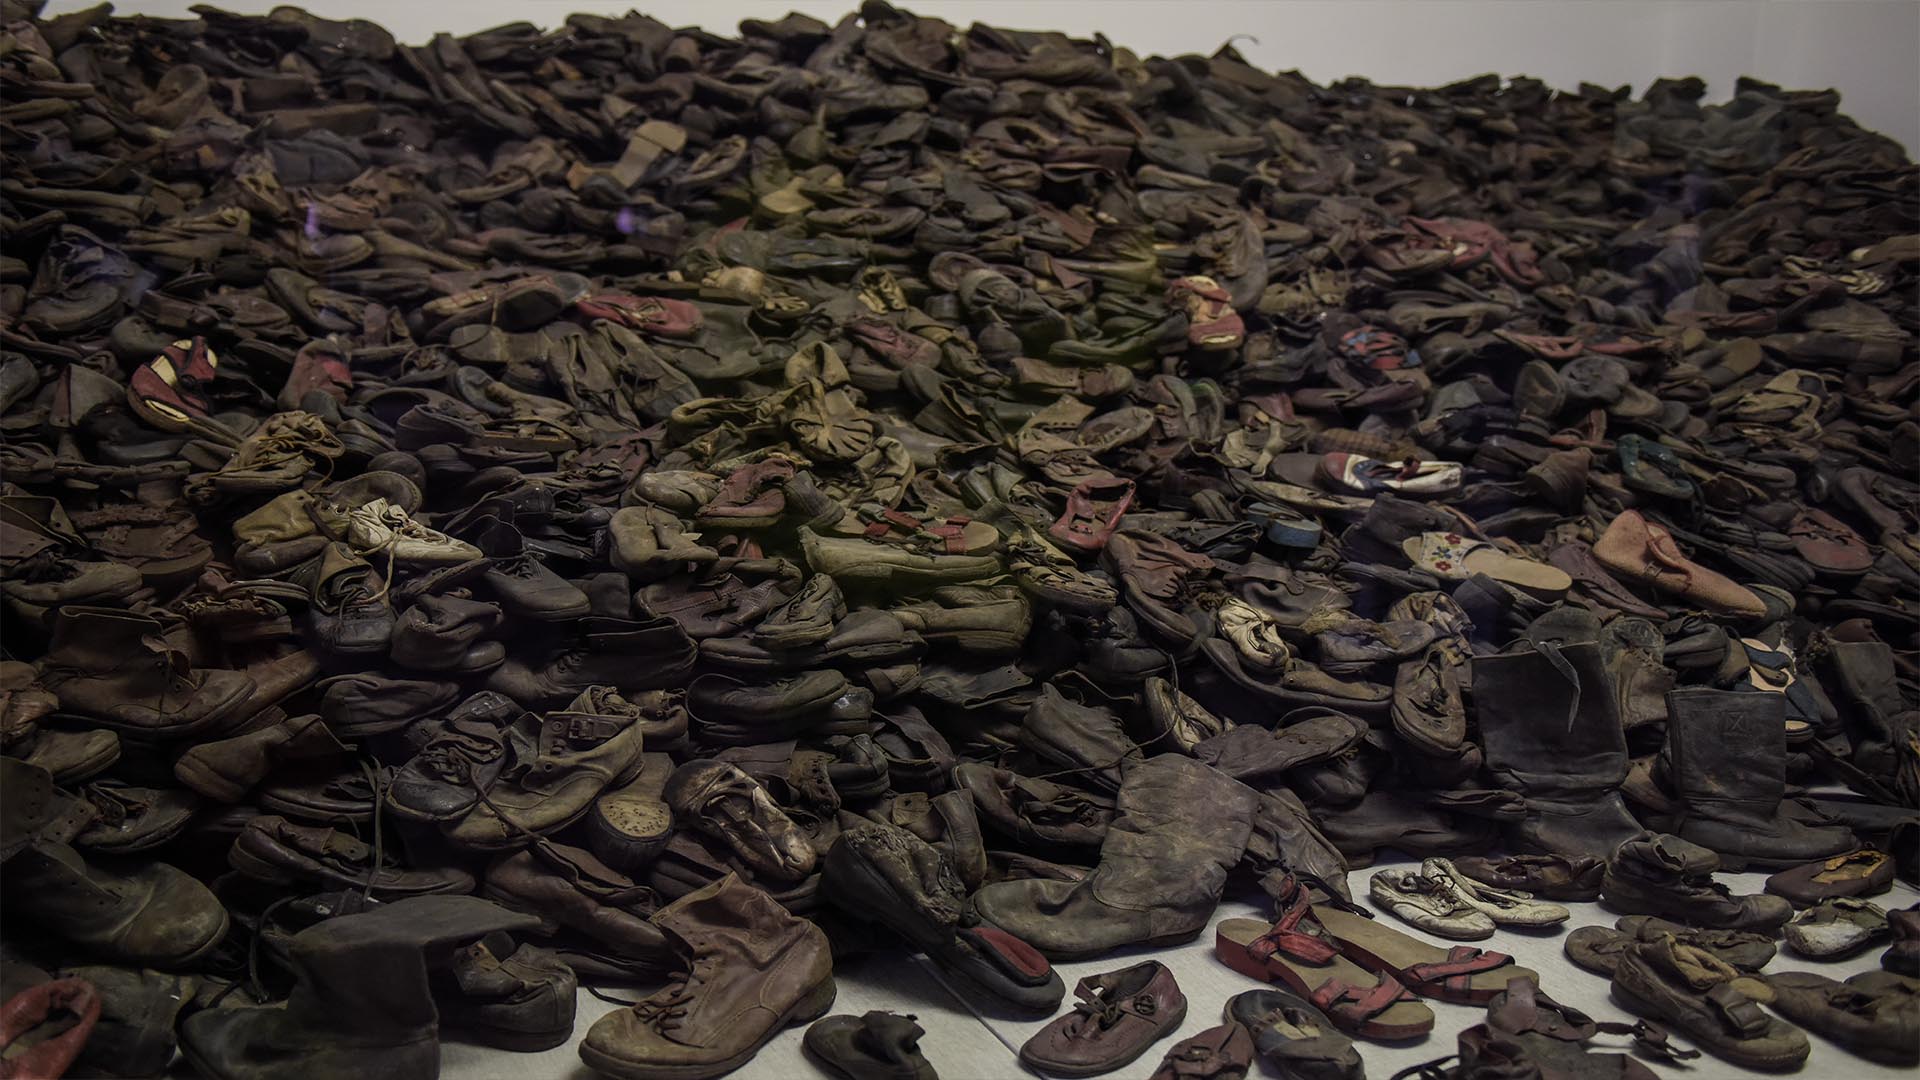 Zapatos confiscados a los prisioneros, hoy en uno de los muchos museos sobre el Holocausto (Auschwitz-Birkenau Museum)